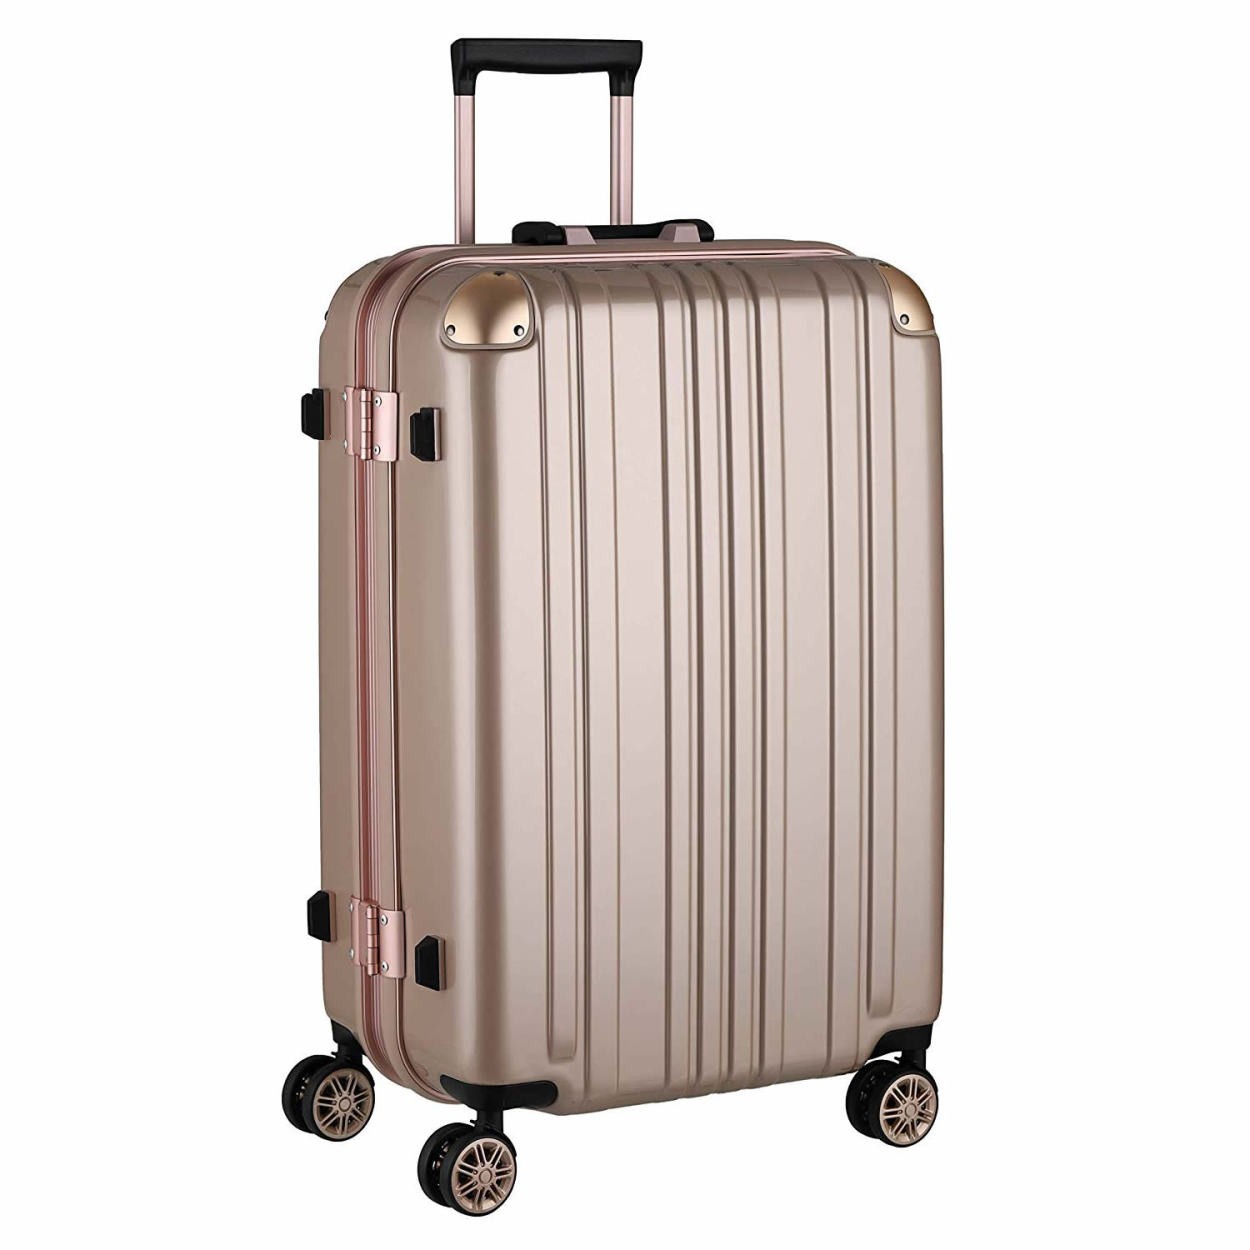 スーツケース キャリーバッグ トランクケース レディースバッグ Lサイズ 大型 超軽量 おしゃれ かわいい キャリーケース キャリーバッグ 5122 67 5122 68 スーツケースのマリエナマキ 通販 Yahoo ショッピング